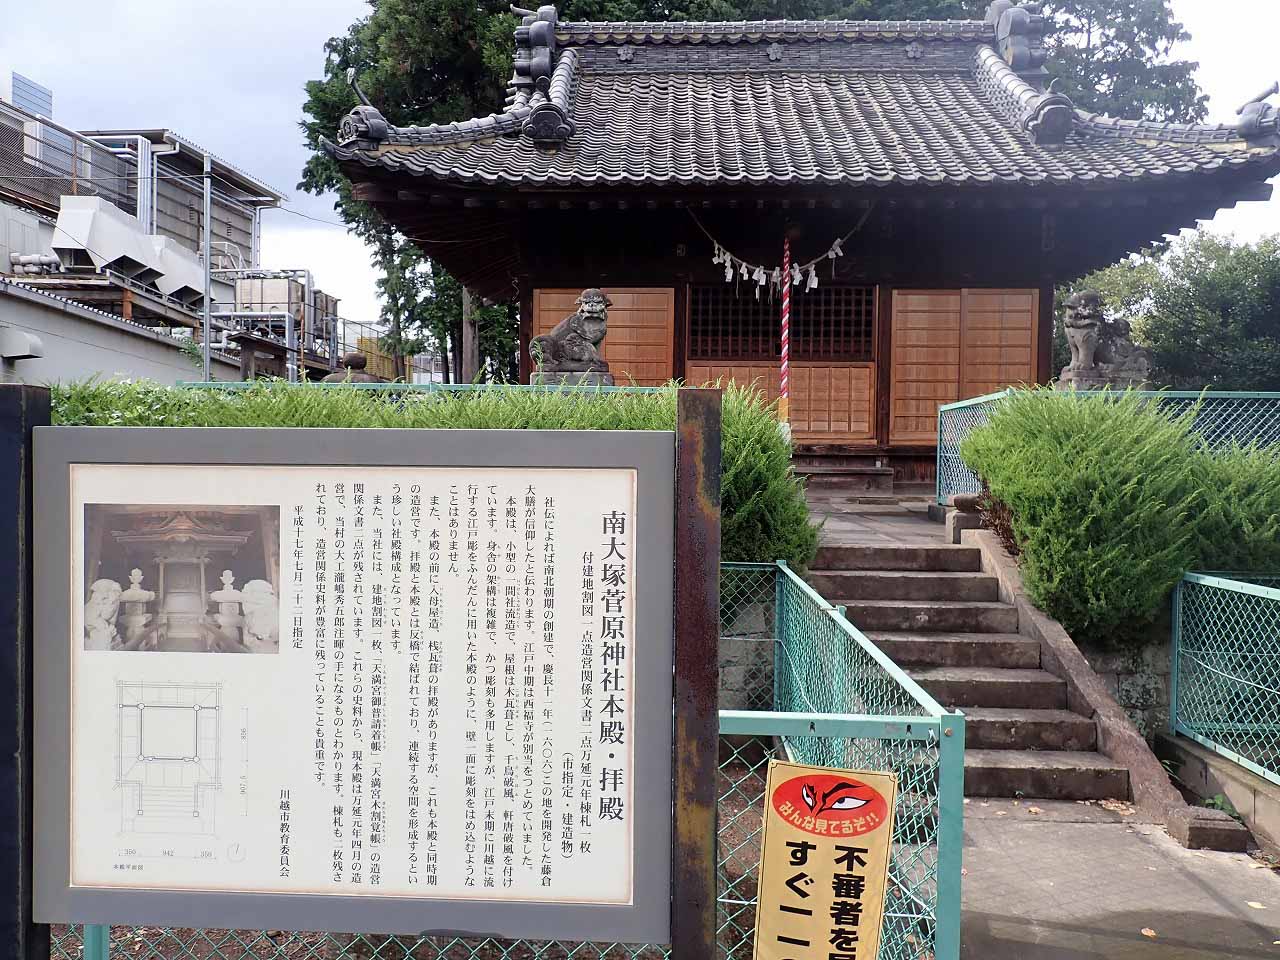 川越の有名な神社仏閣「南大塚菅原神社」